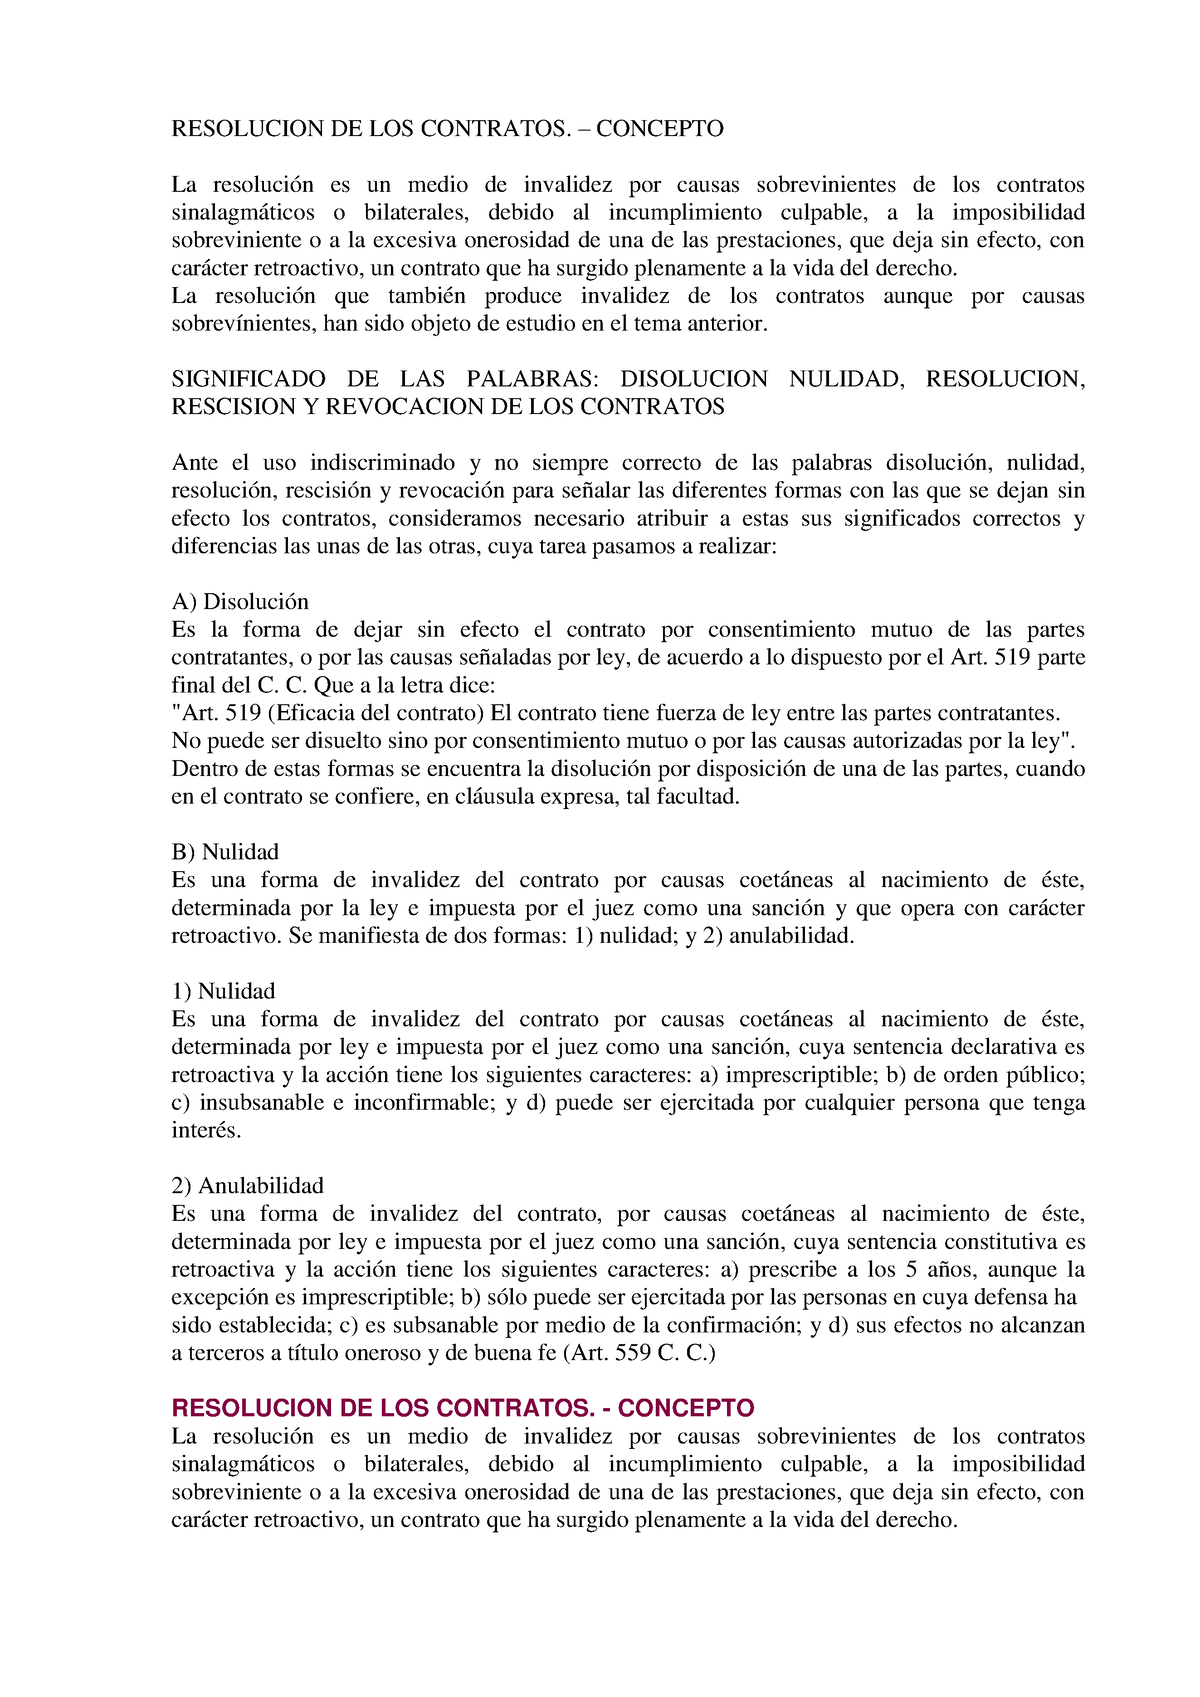 Resolucion De Los Contratos Control De Lectura Copia Resolucion De Los Contratos 9363